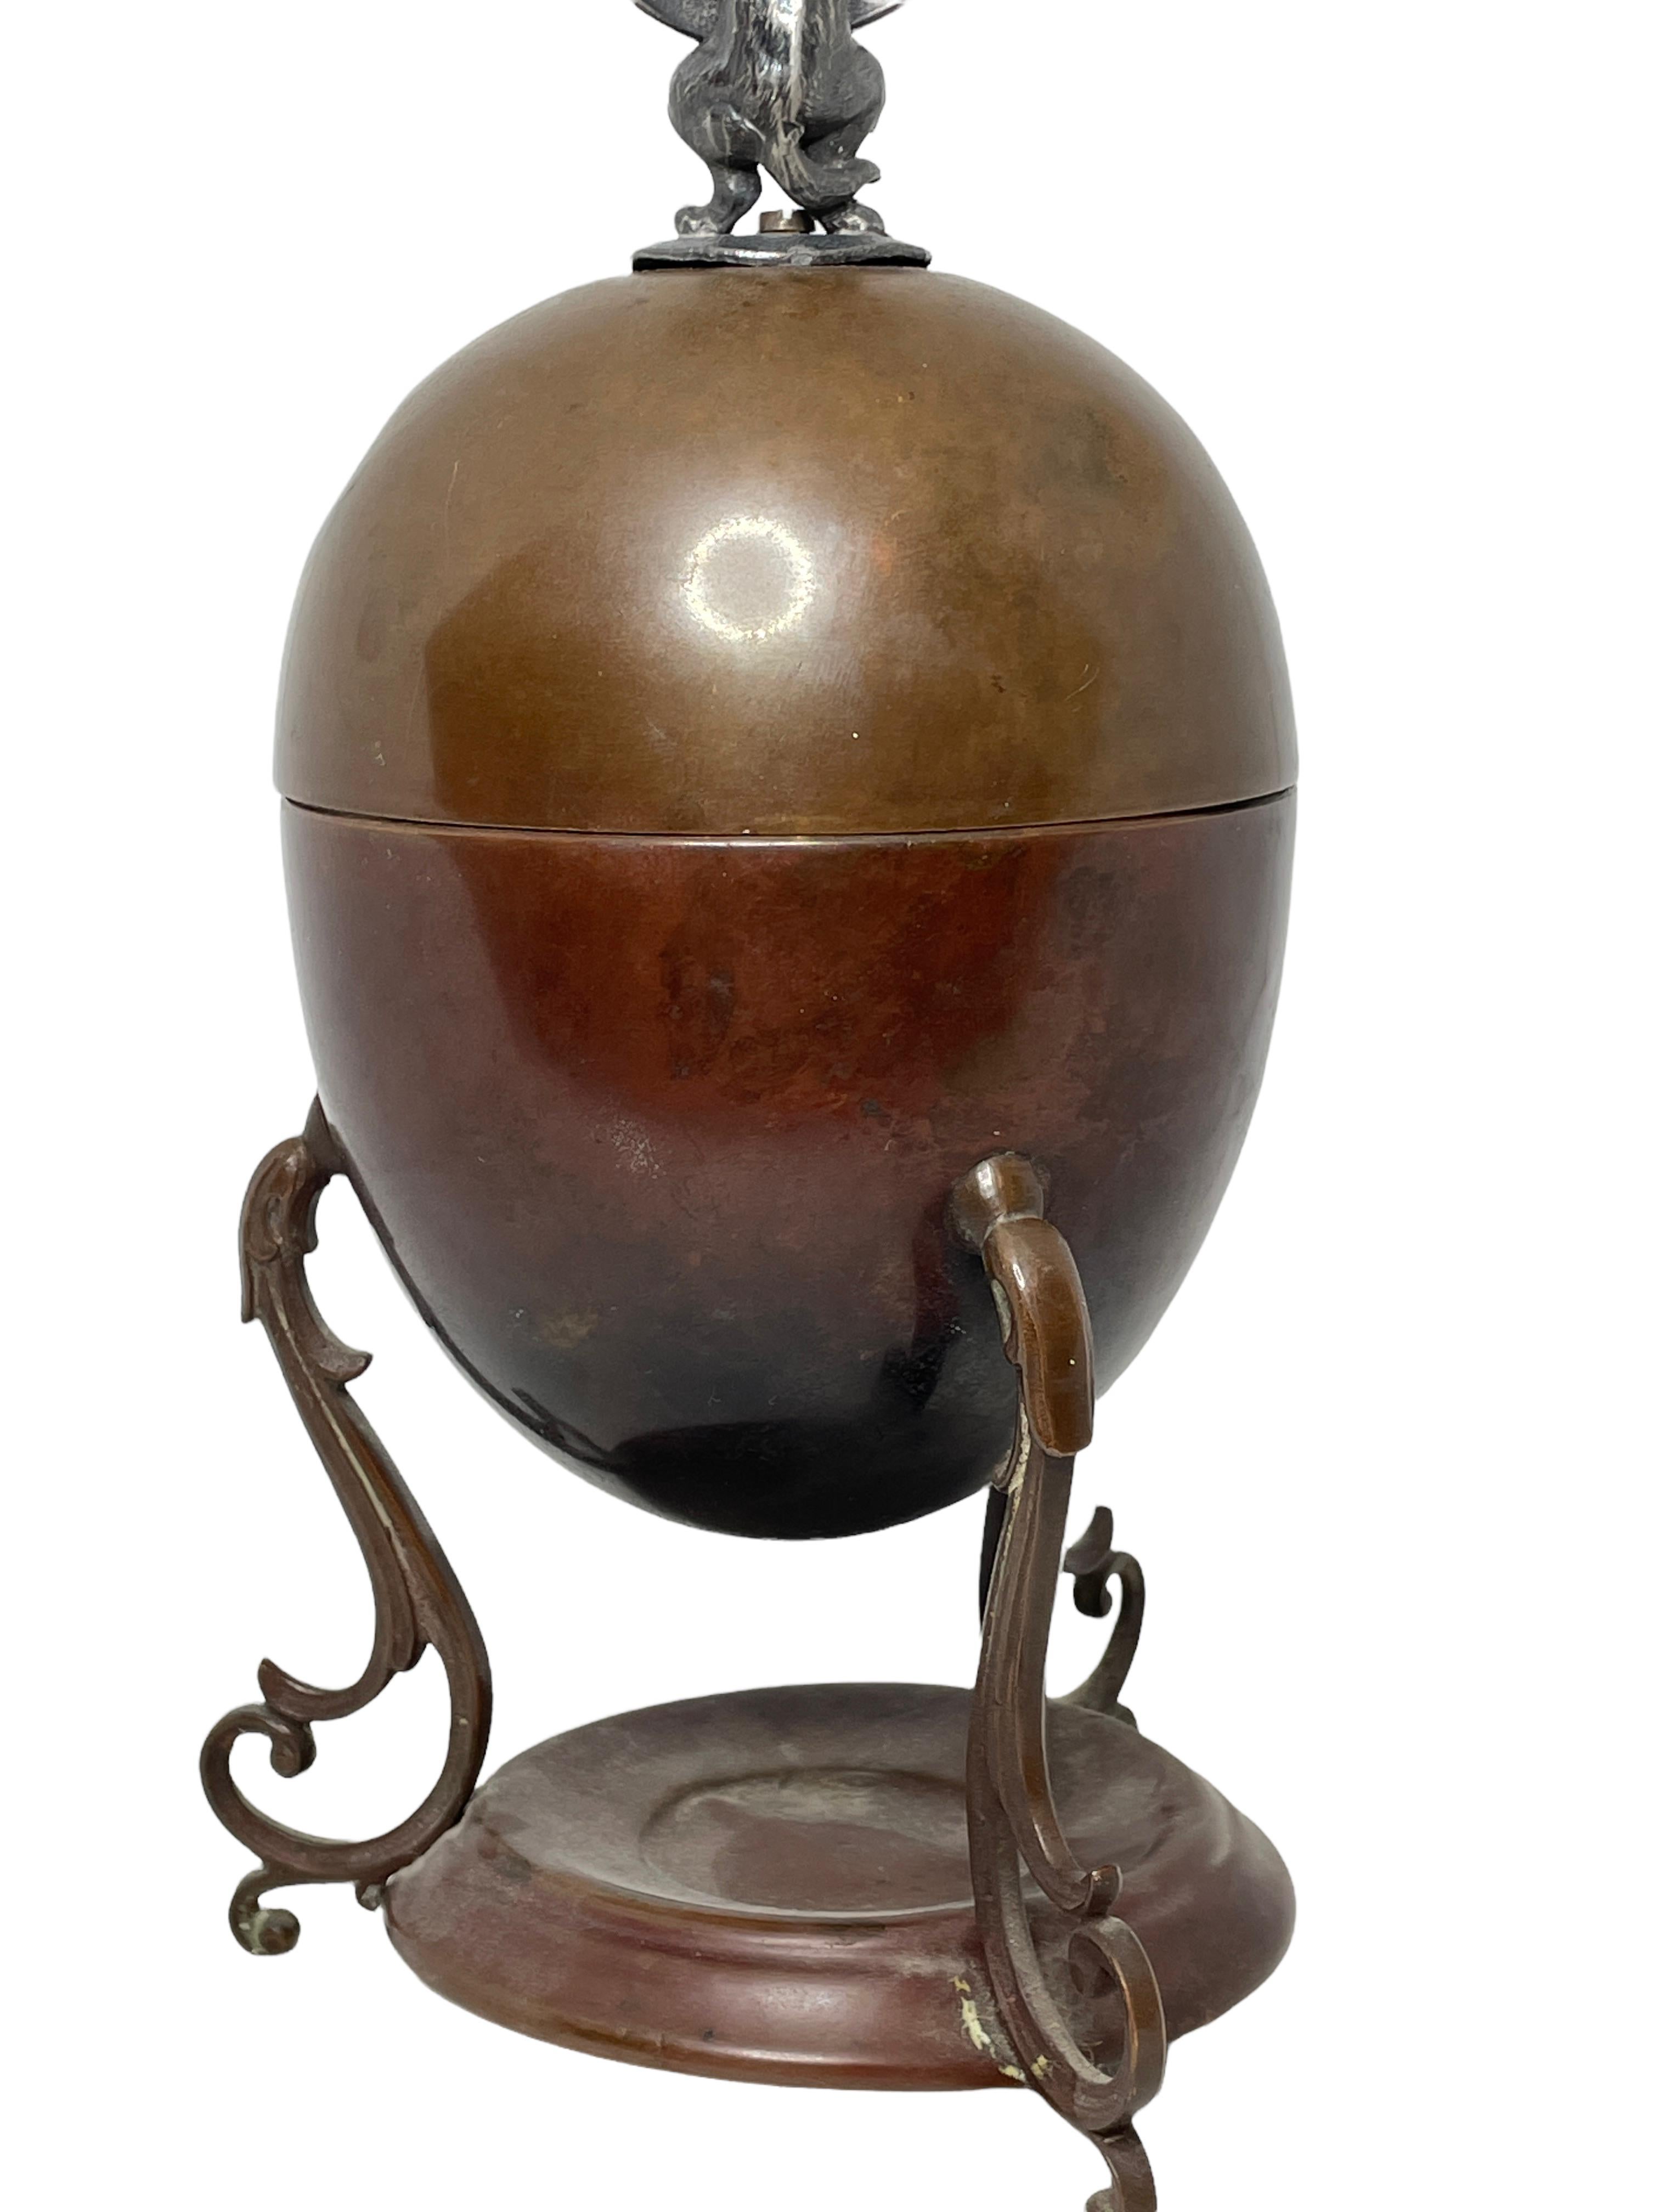 Antique 19th c Copper Egg Coddler Egg boiler with Dog Figure, German 1